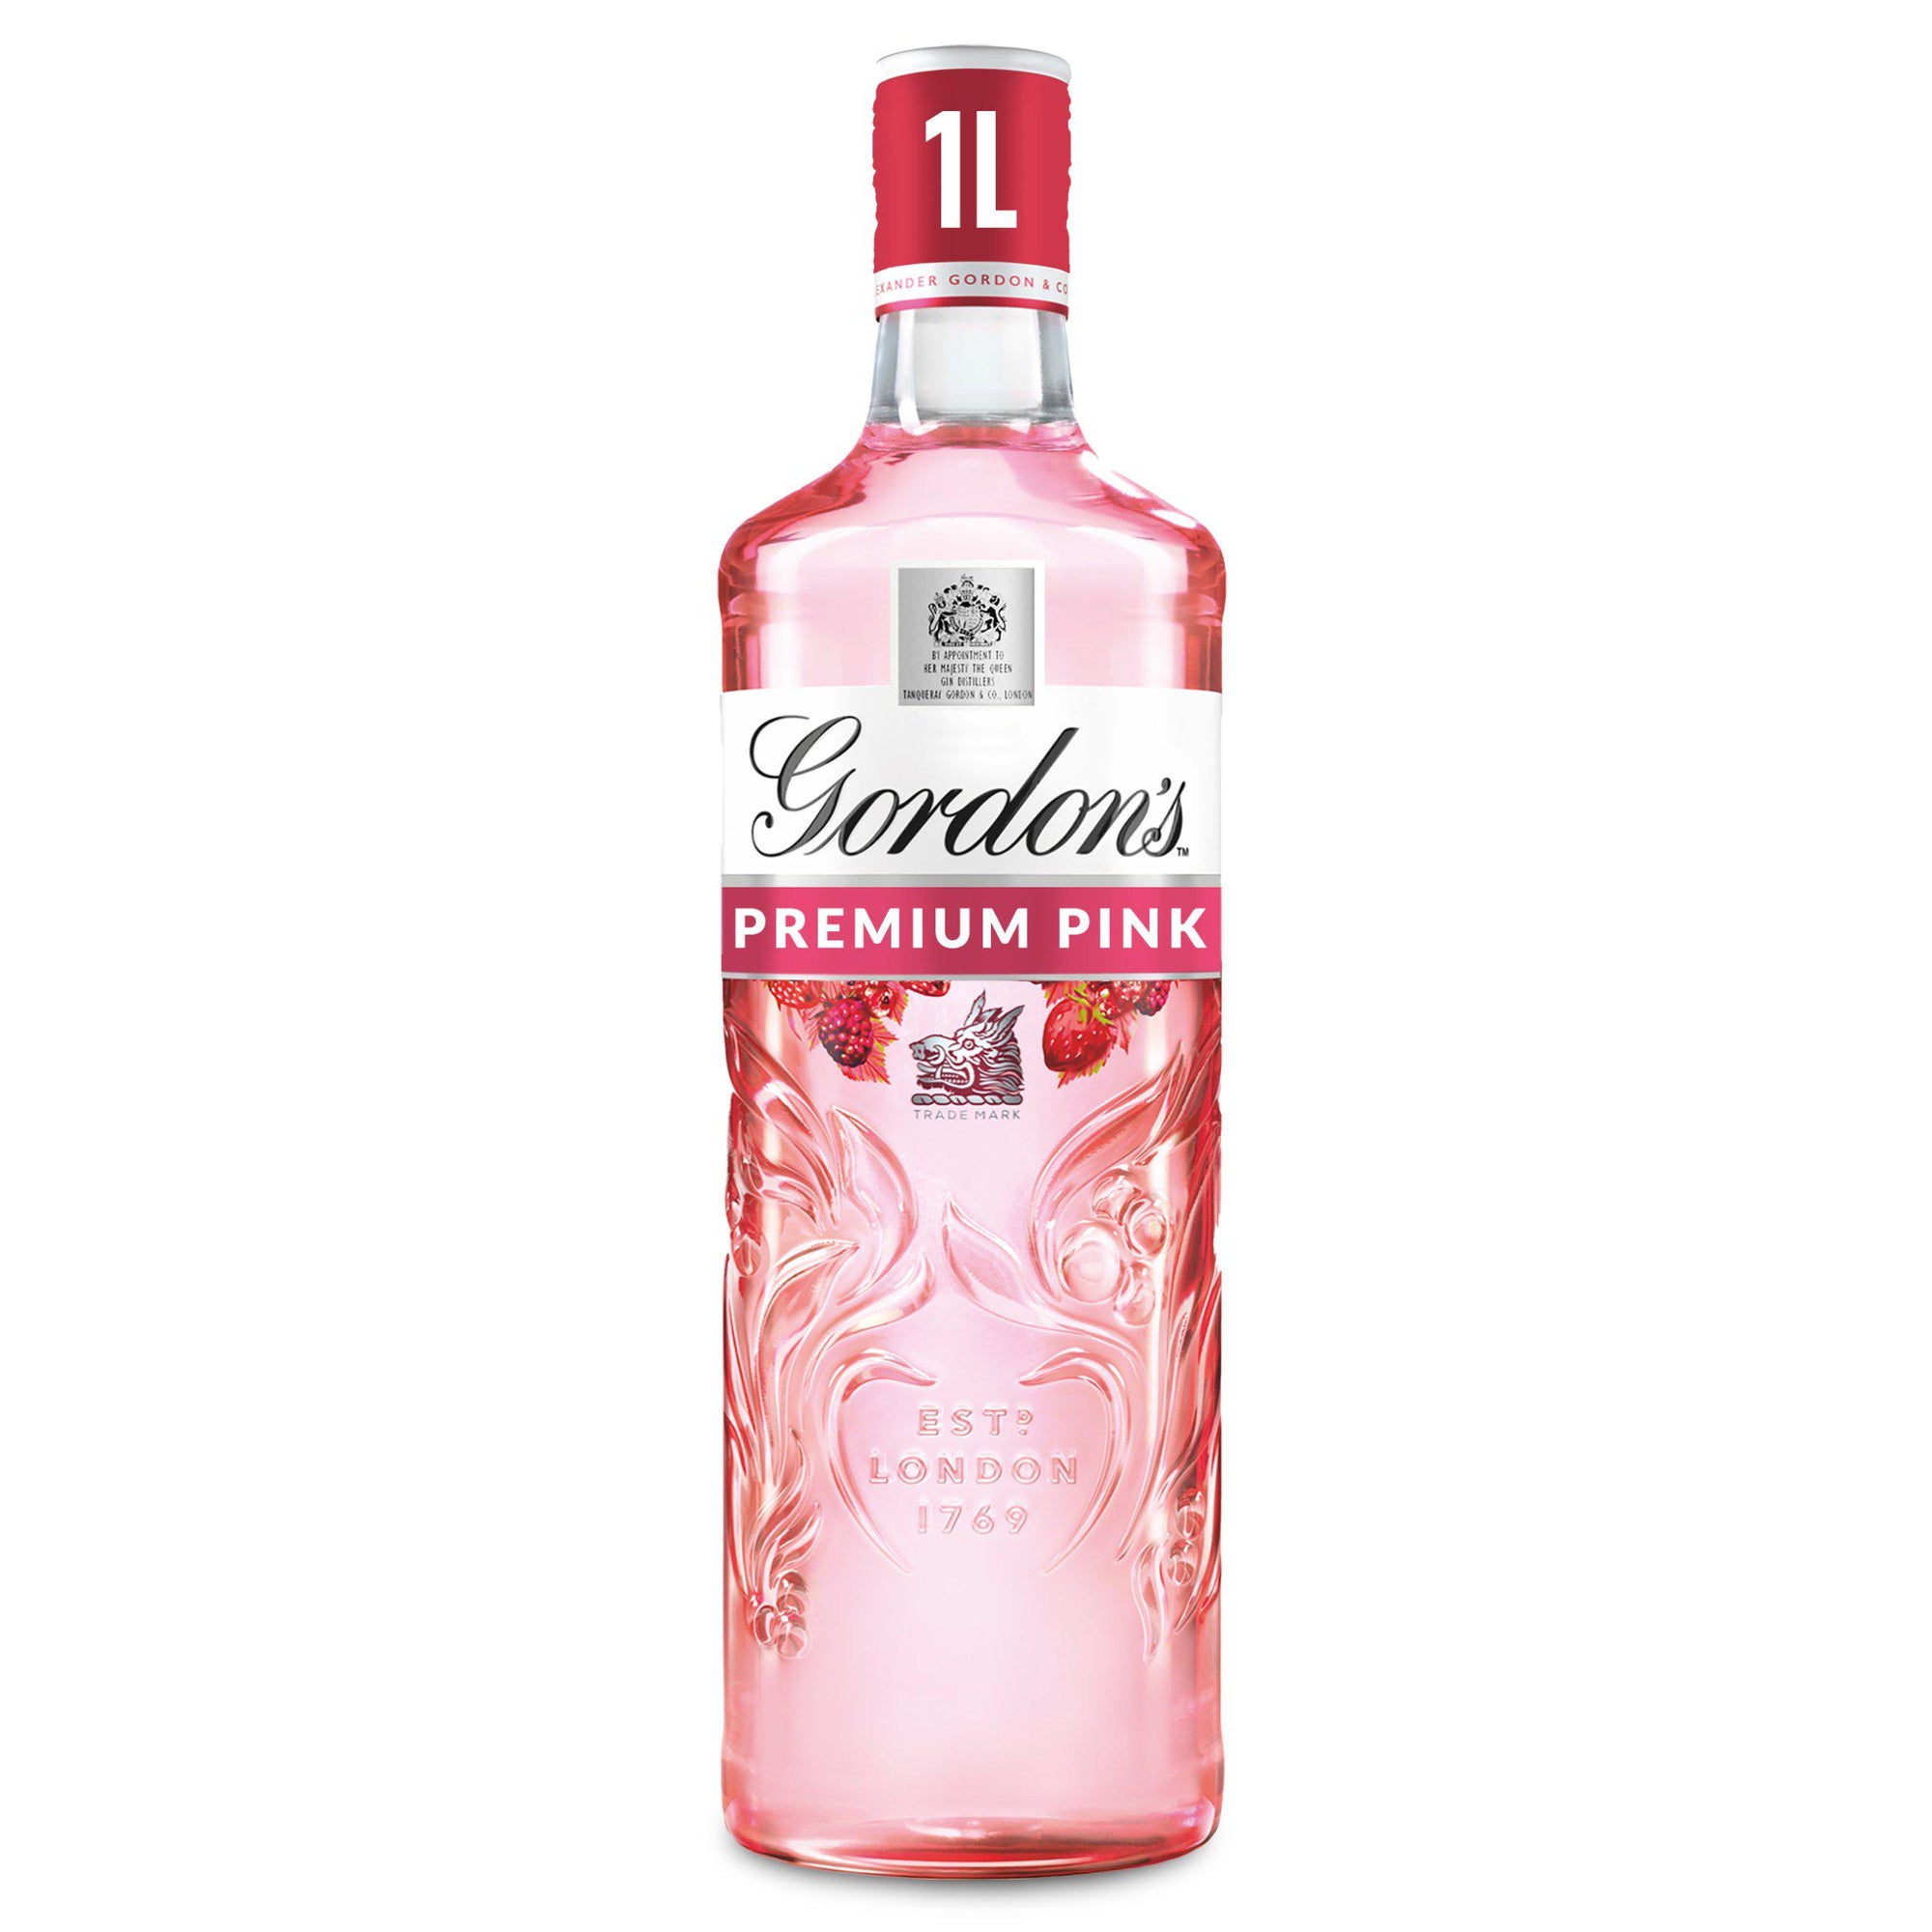 Gordon's Premium Pink Distilled Gin 70cl PM*